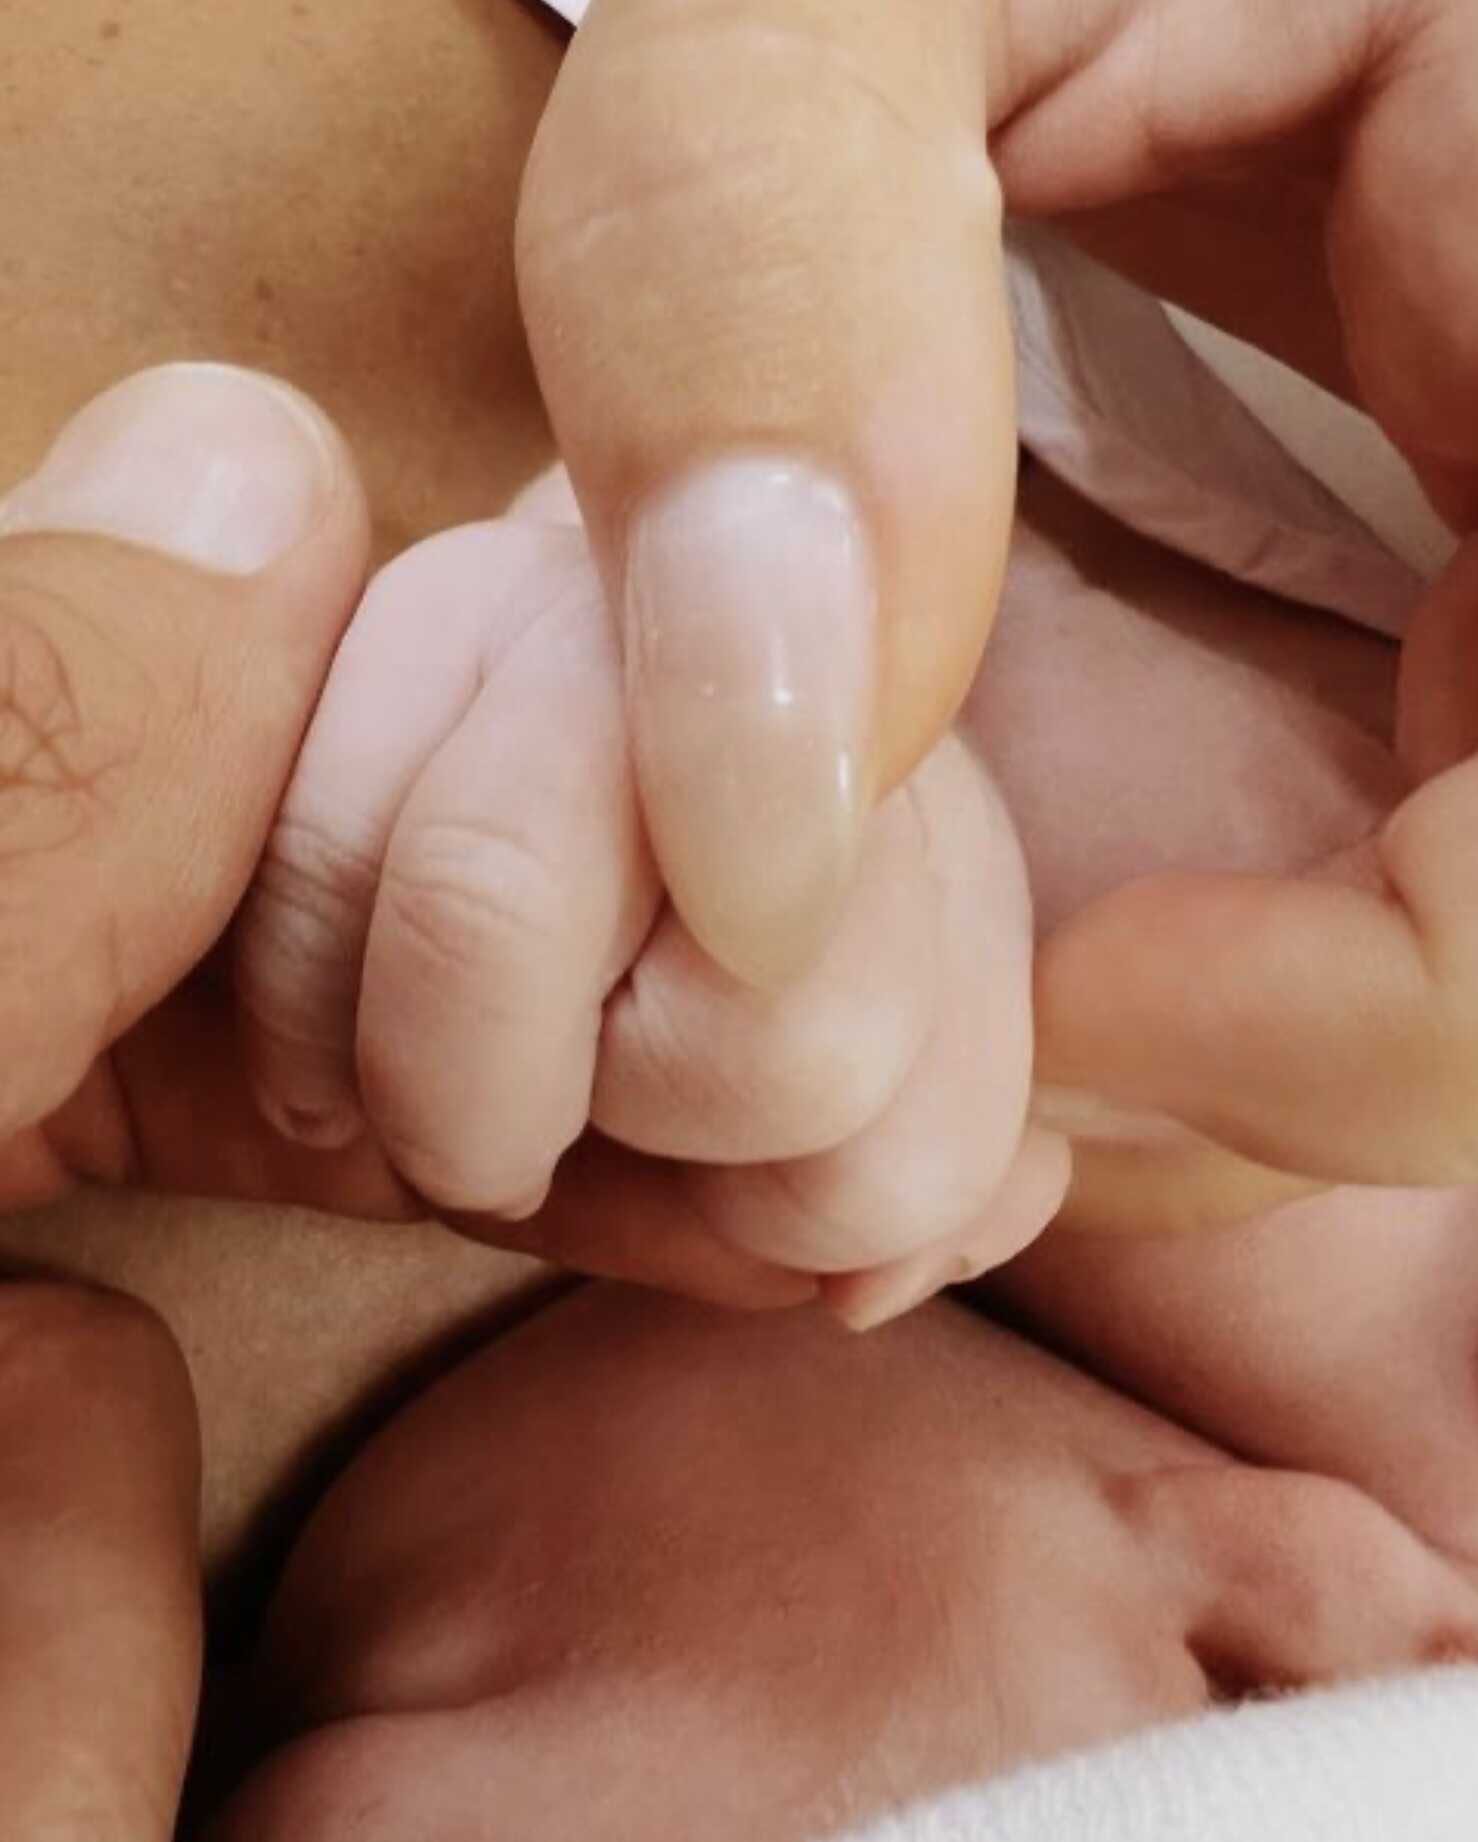 Нюша опубликовала первое фото с новорождённым сыном